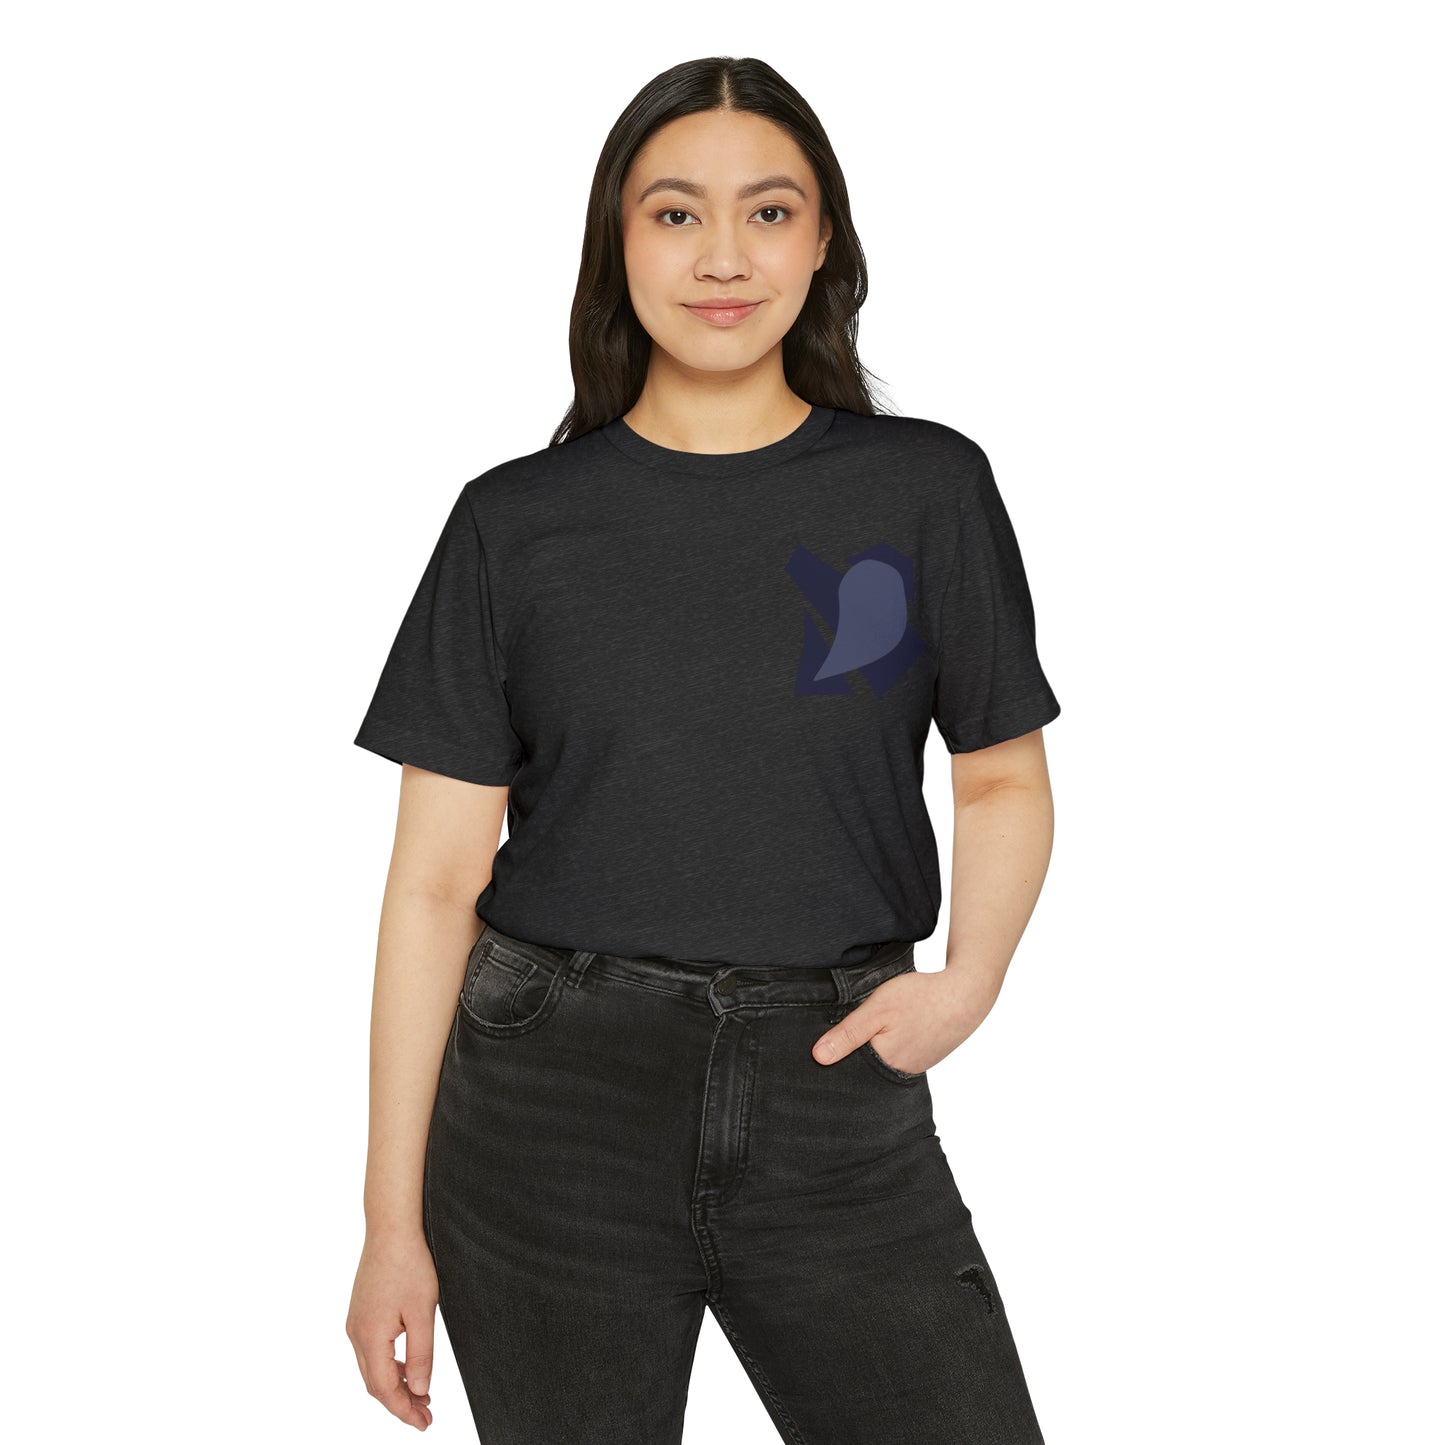 MINIMAL SHAPE 106 - Camiseta ecológica reciclada unisex